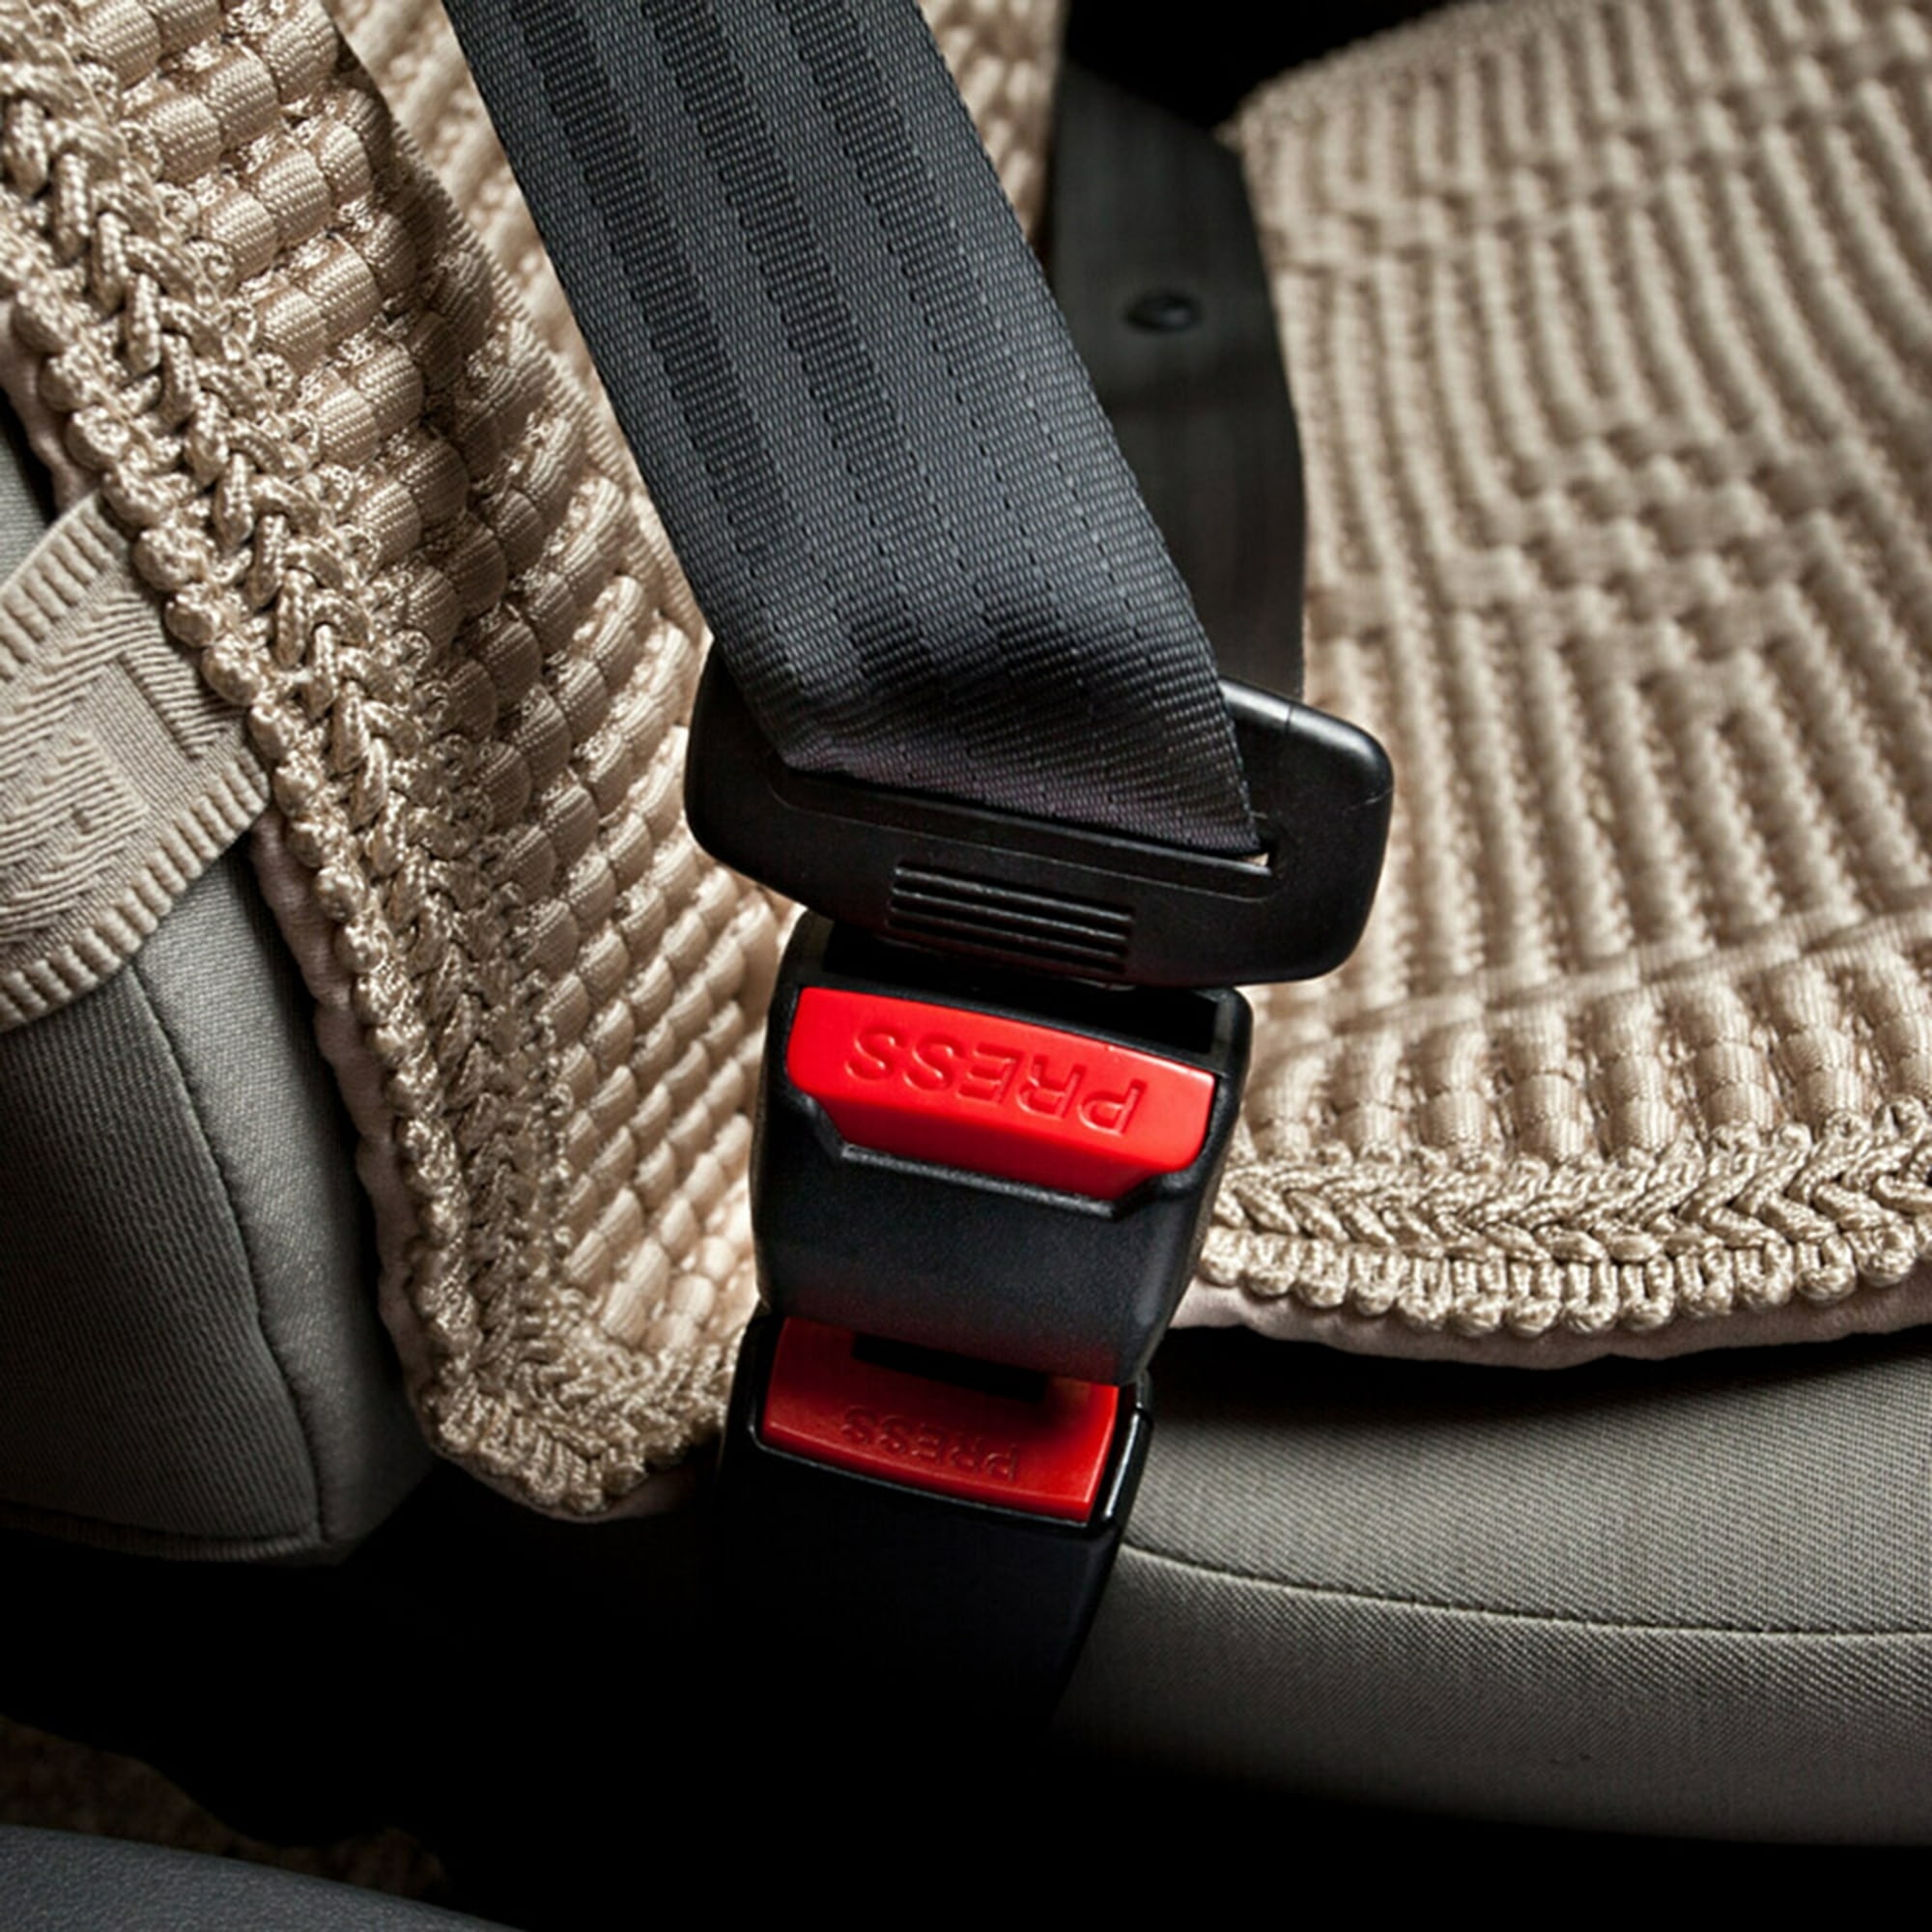 ER 1x Clip de hebilla de cinturón de seguridad de coche Protector